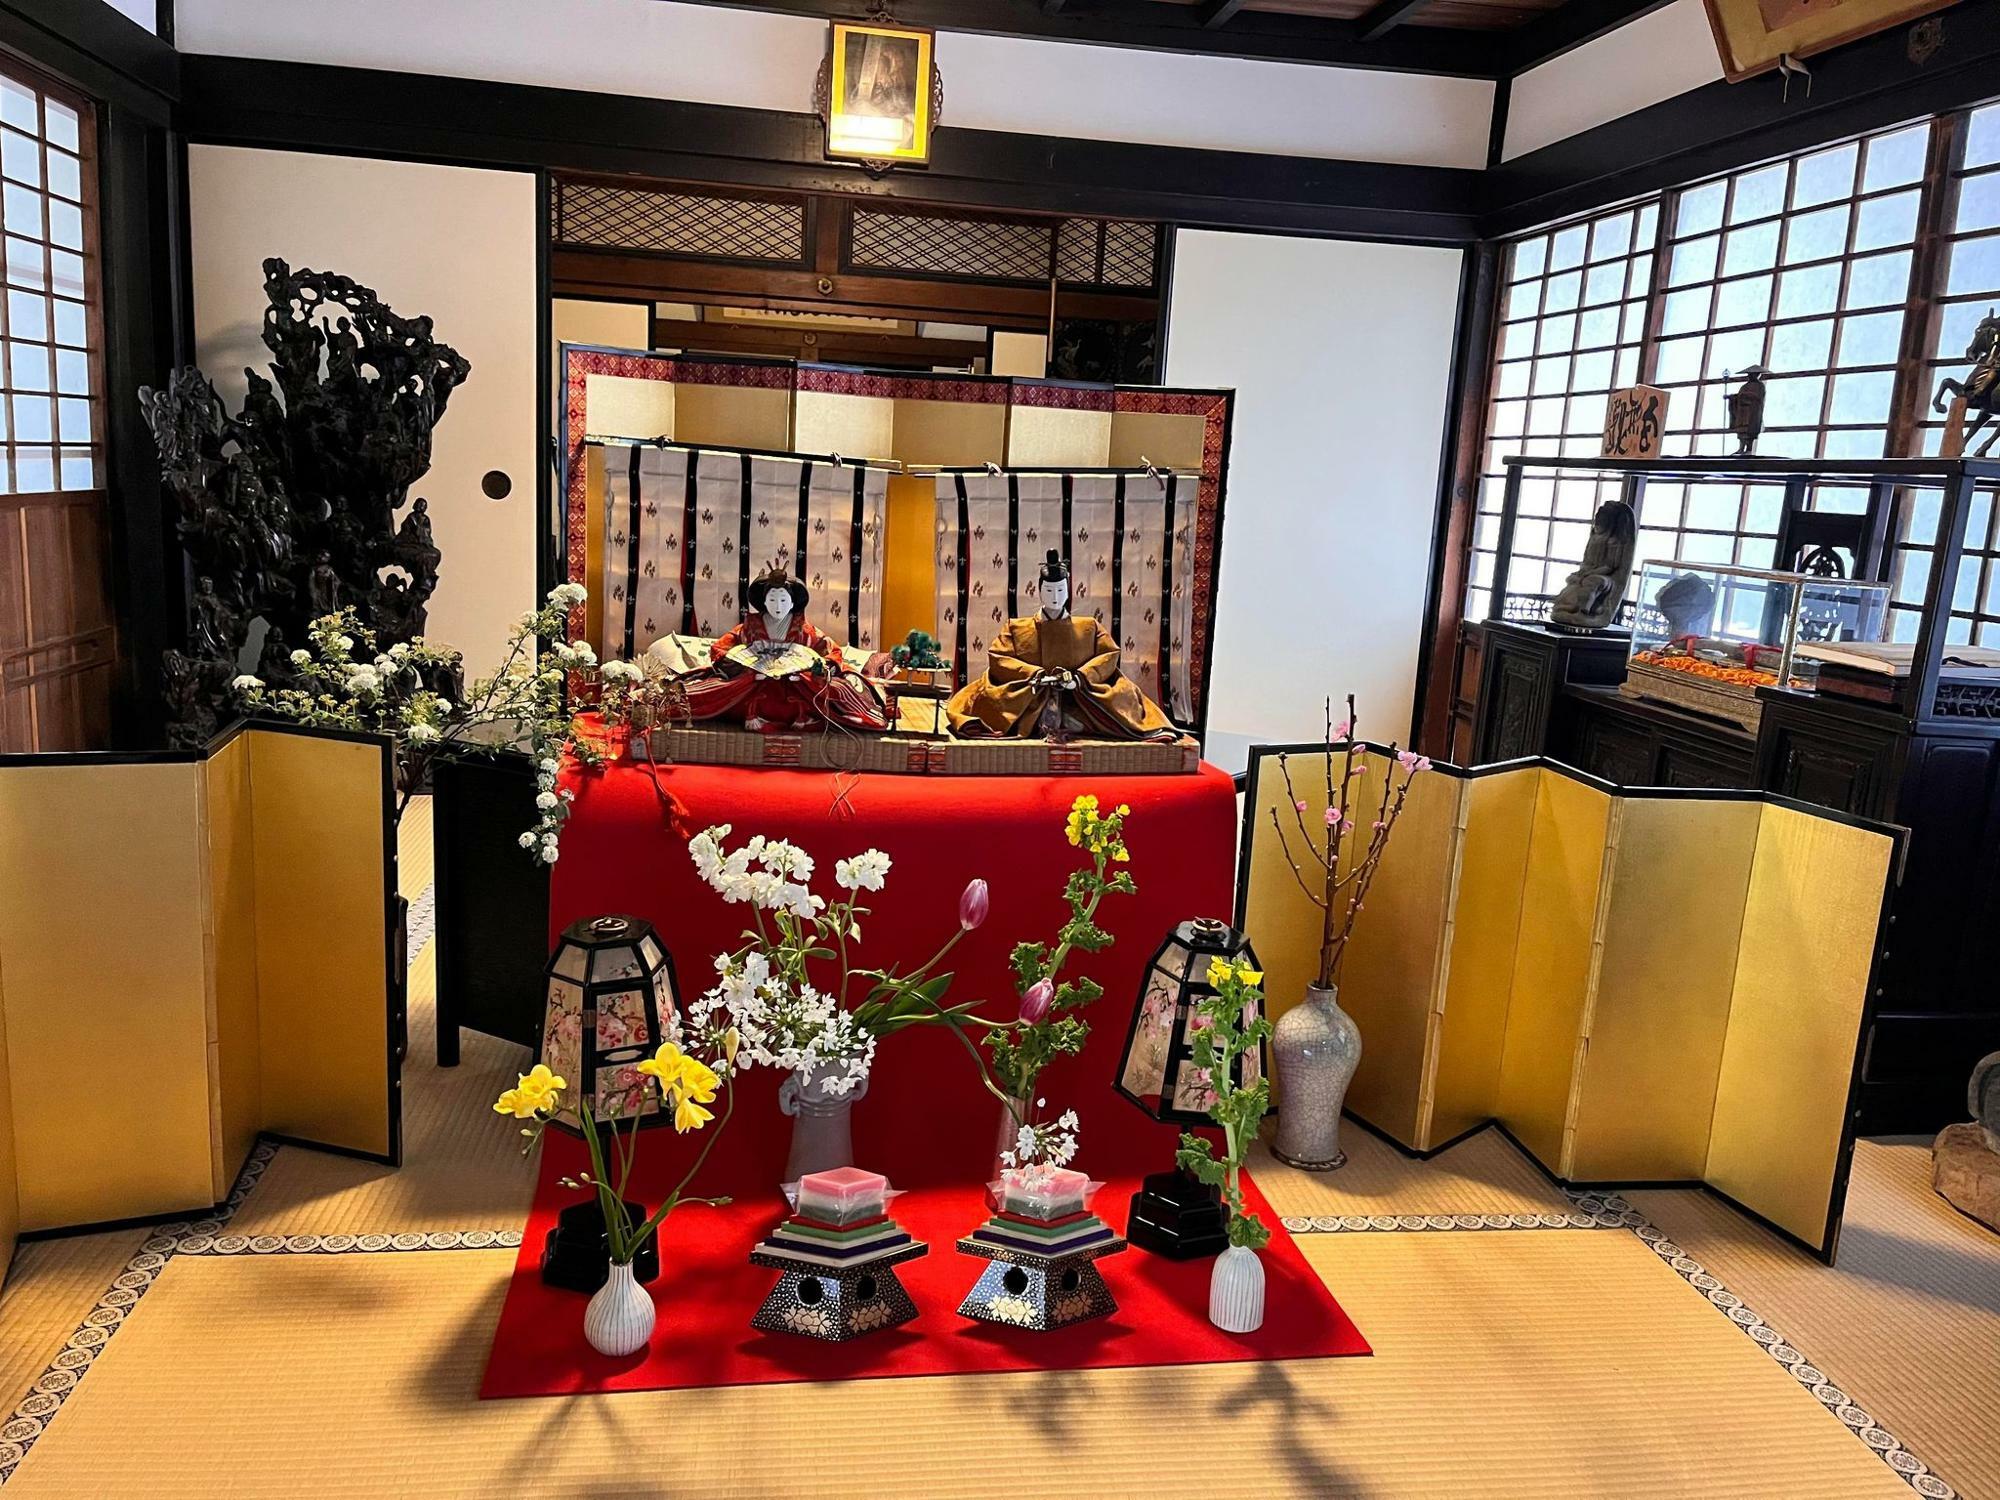 観心寺KU-RIの玄関に飾られていたひな人形